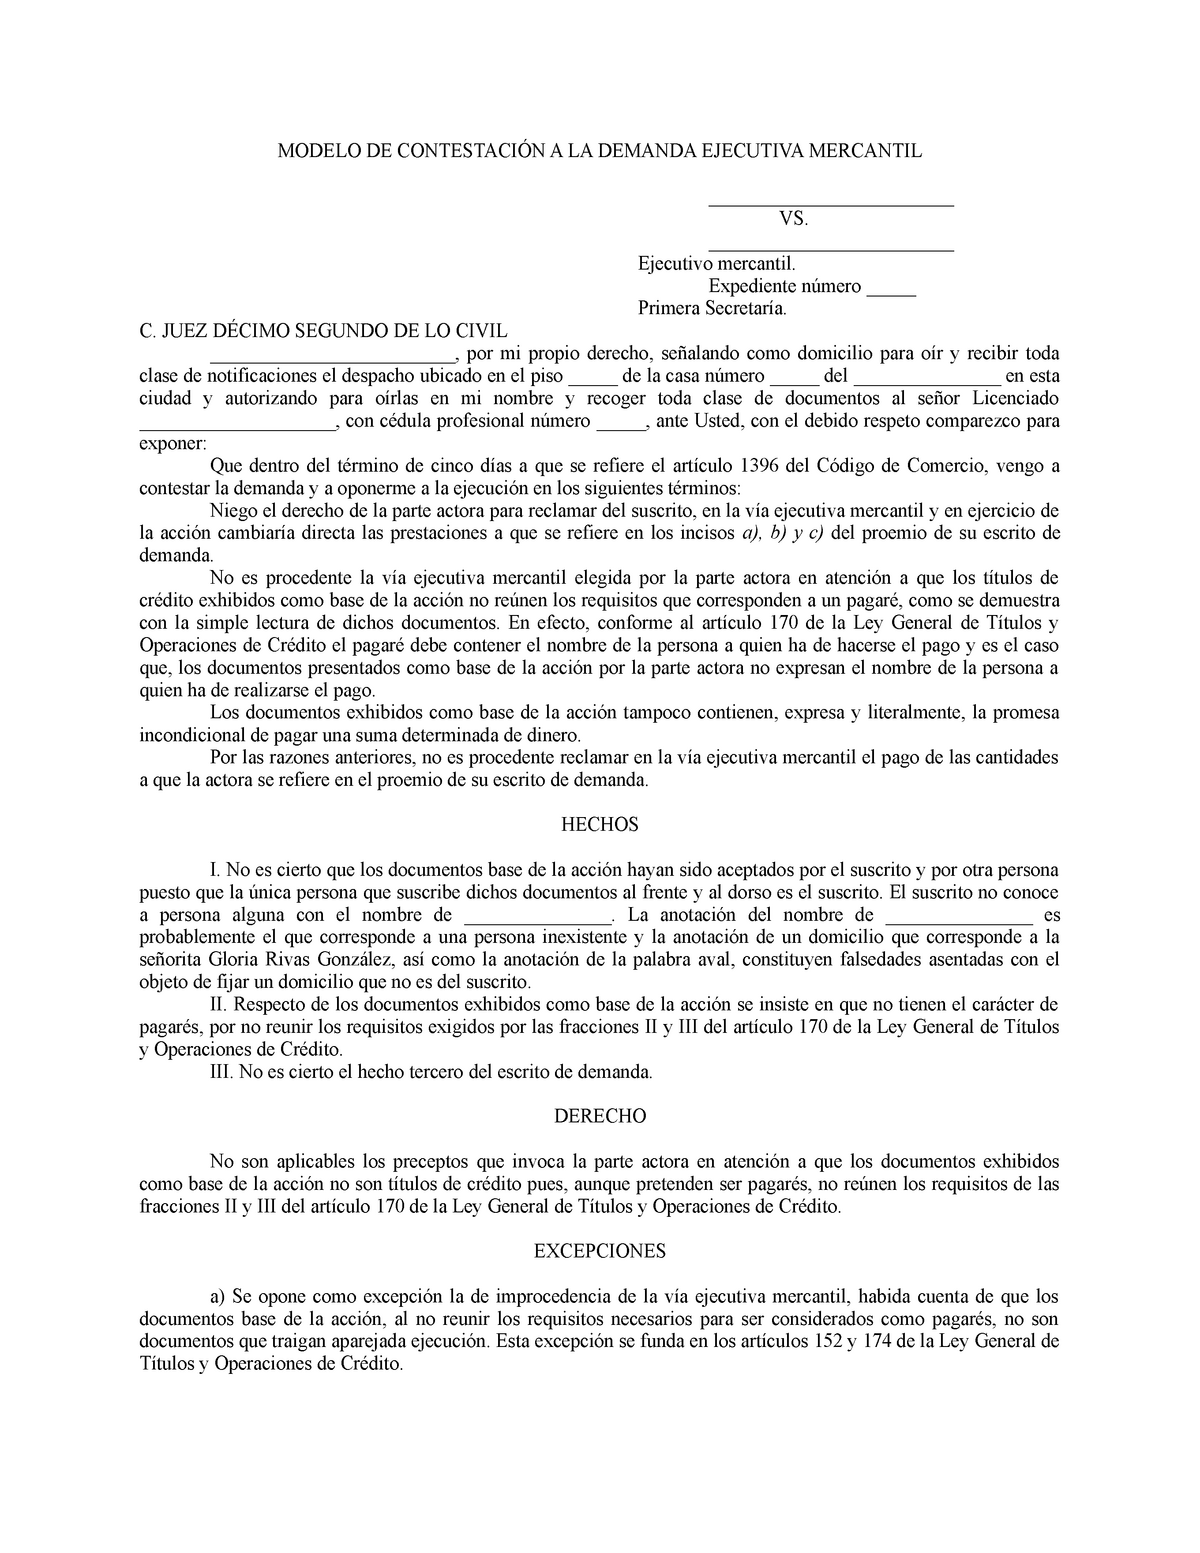 Contestación a demanda ejecutiva mercantil 3 - MODELO DE CONTESTACIÓN A LA DEMANDA  EJECUTIVA - Studocu